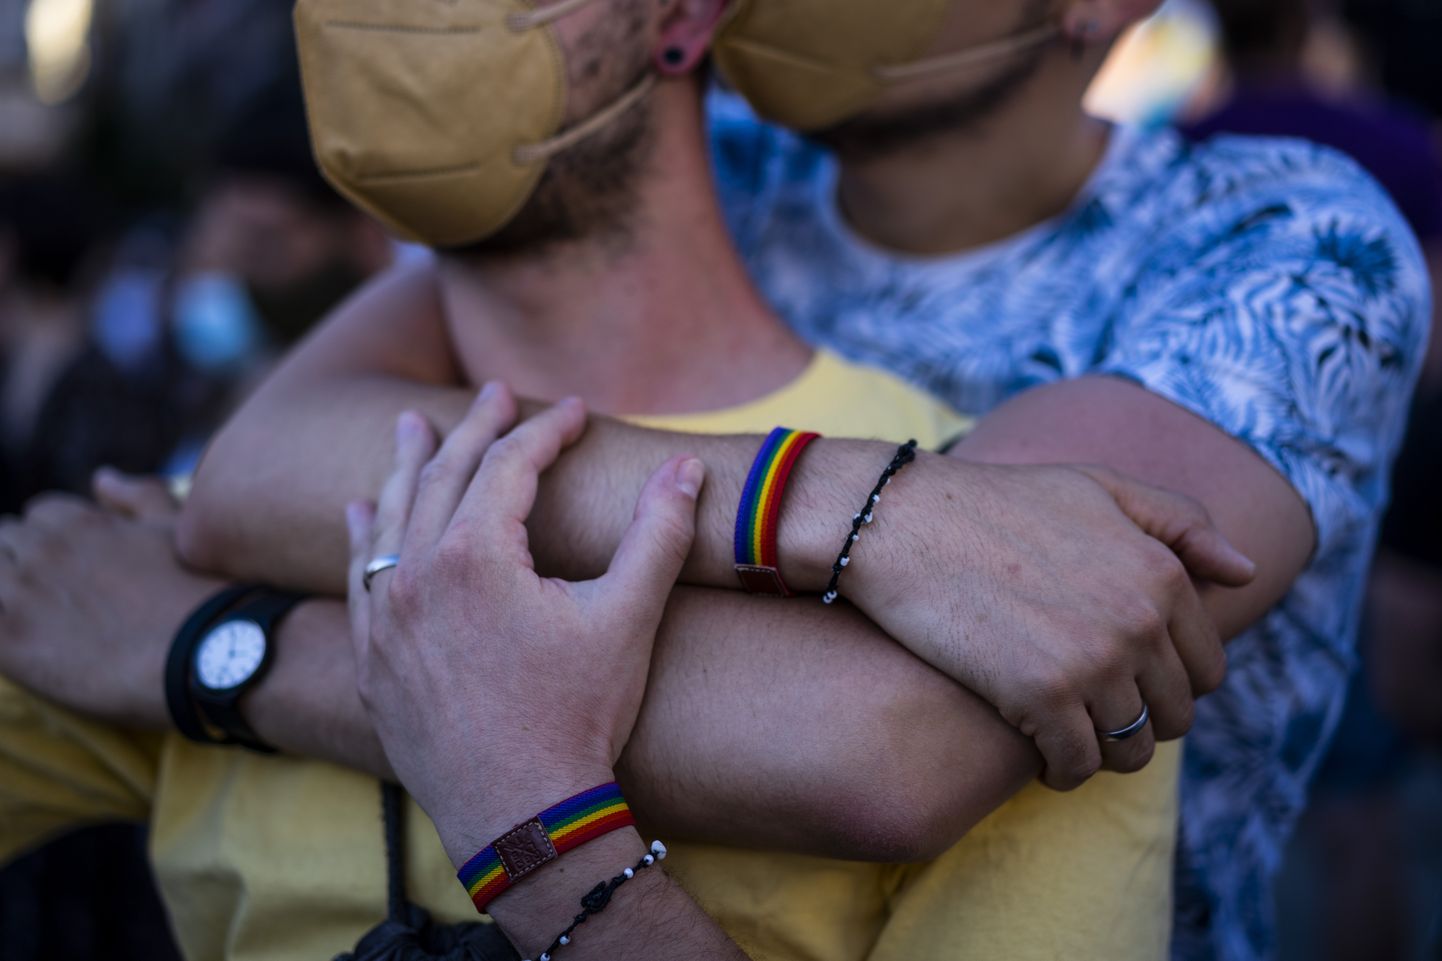 Kaks meest esmaspäevasel meeleavaldusel, kus mälestati nädalavahetusel Coruñas tapetud 24-aastast geid Samuel Luizi.